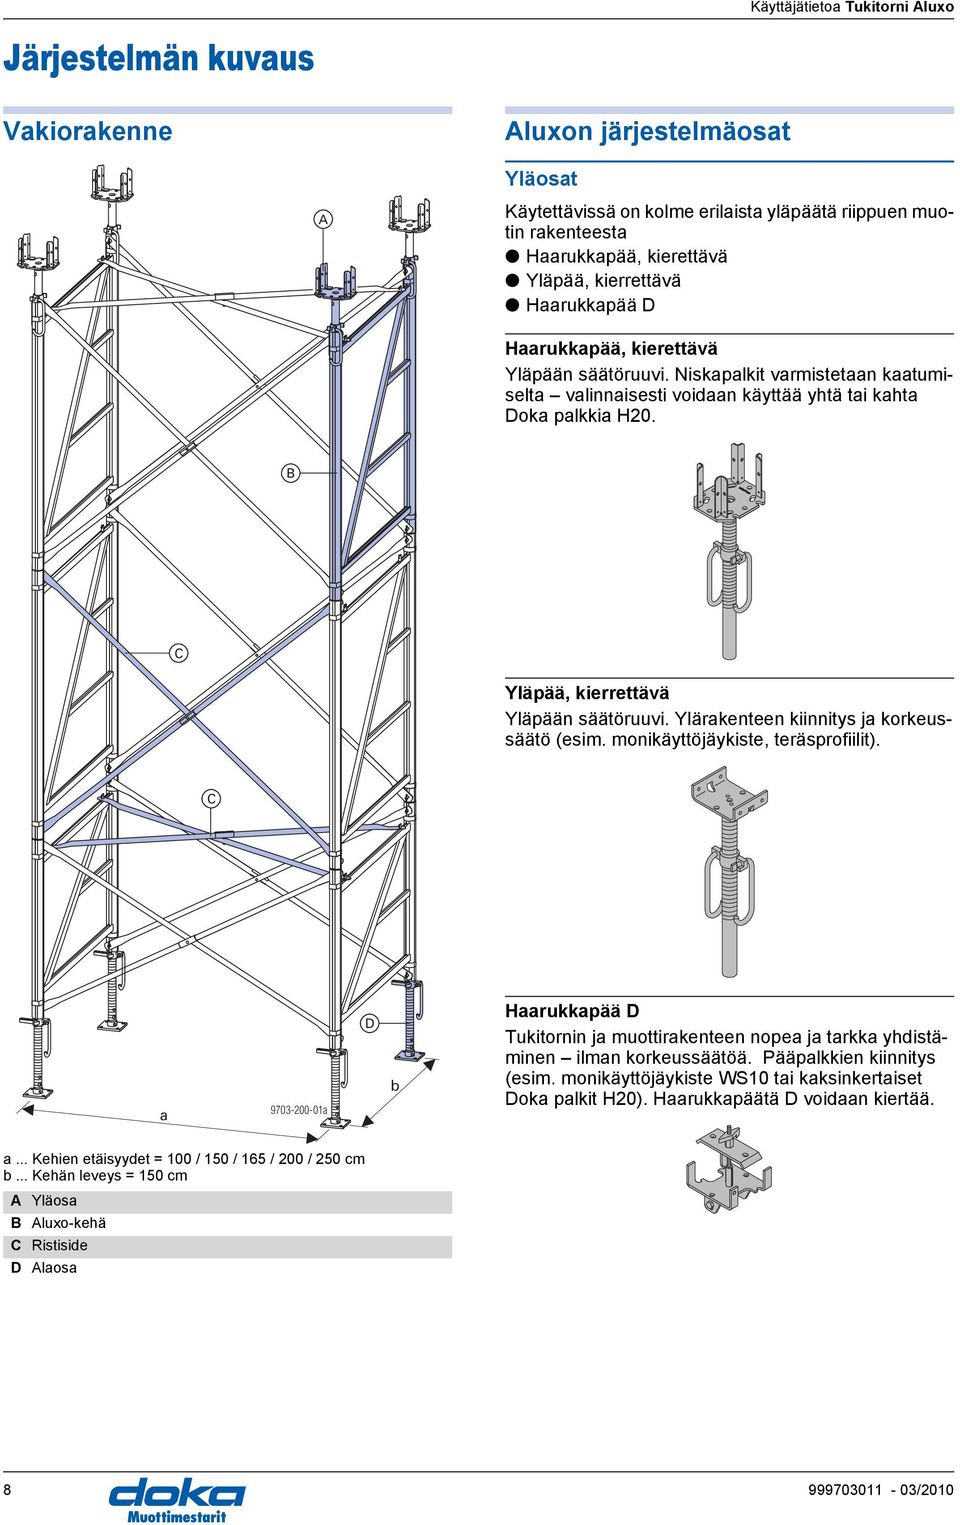 Ylärakenteen kiinnitys ja korkeussäätö (esim. monikäyttöjäykiste, teräsprofiilit). C a 9703-200-01a D b Haarukkapää D Tukitornin ja muottirakenteen nopea ja tarkka yhdistäminen ilman korkeussäätöä.